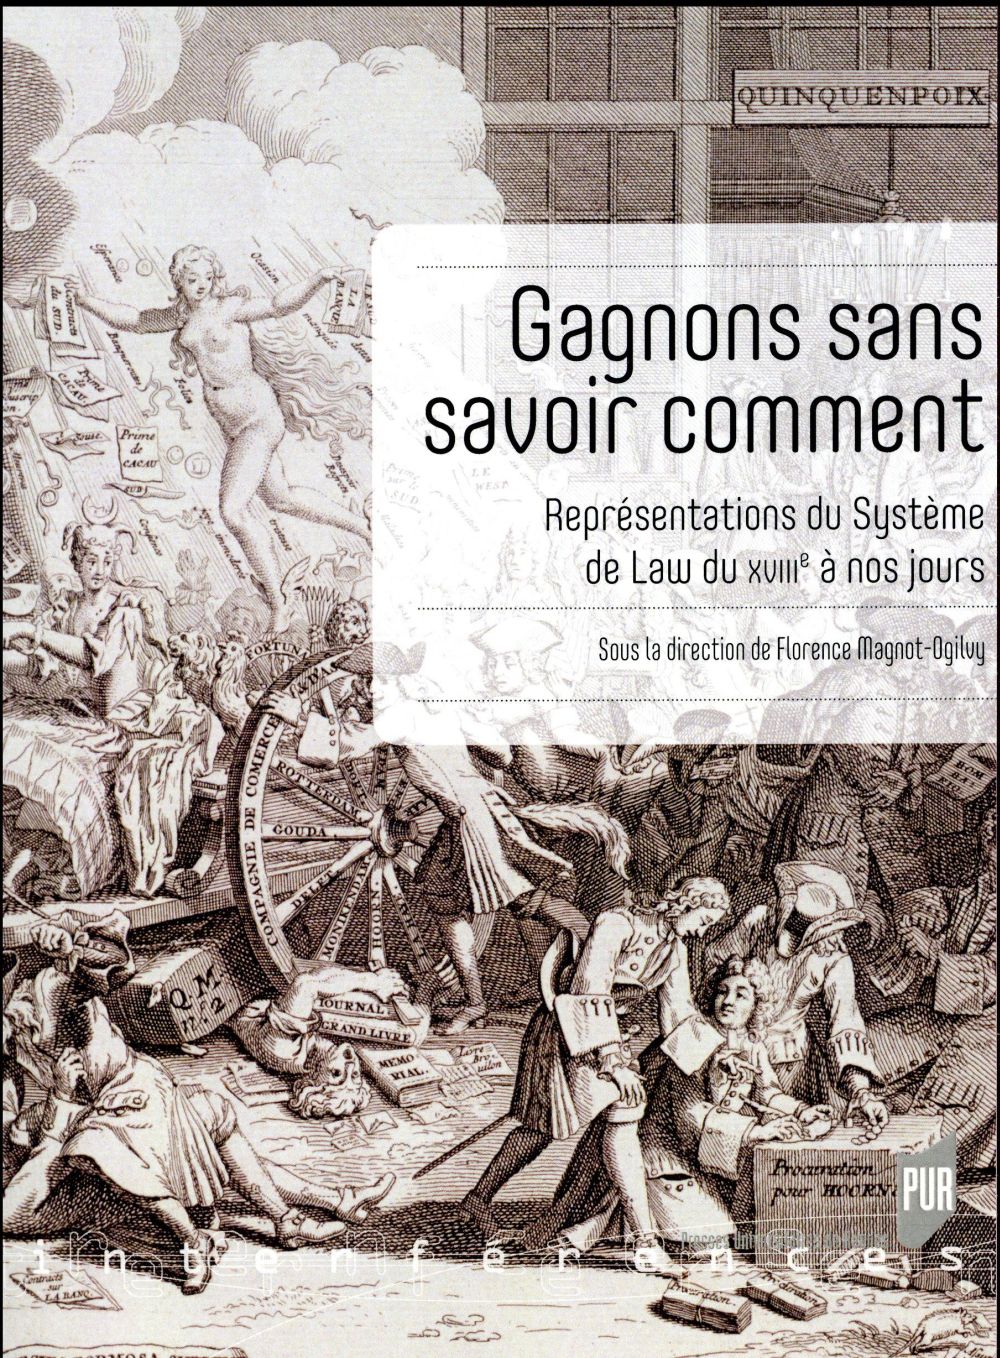 GAGNONS SANS SAVOIR COMMENT - REPRESENTATIONS DU SYSTEME DE LAW DU XVIIIE SIECLE A NOS JOURS